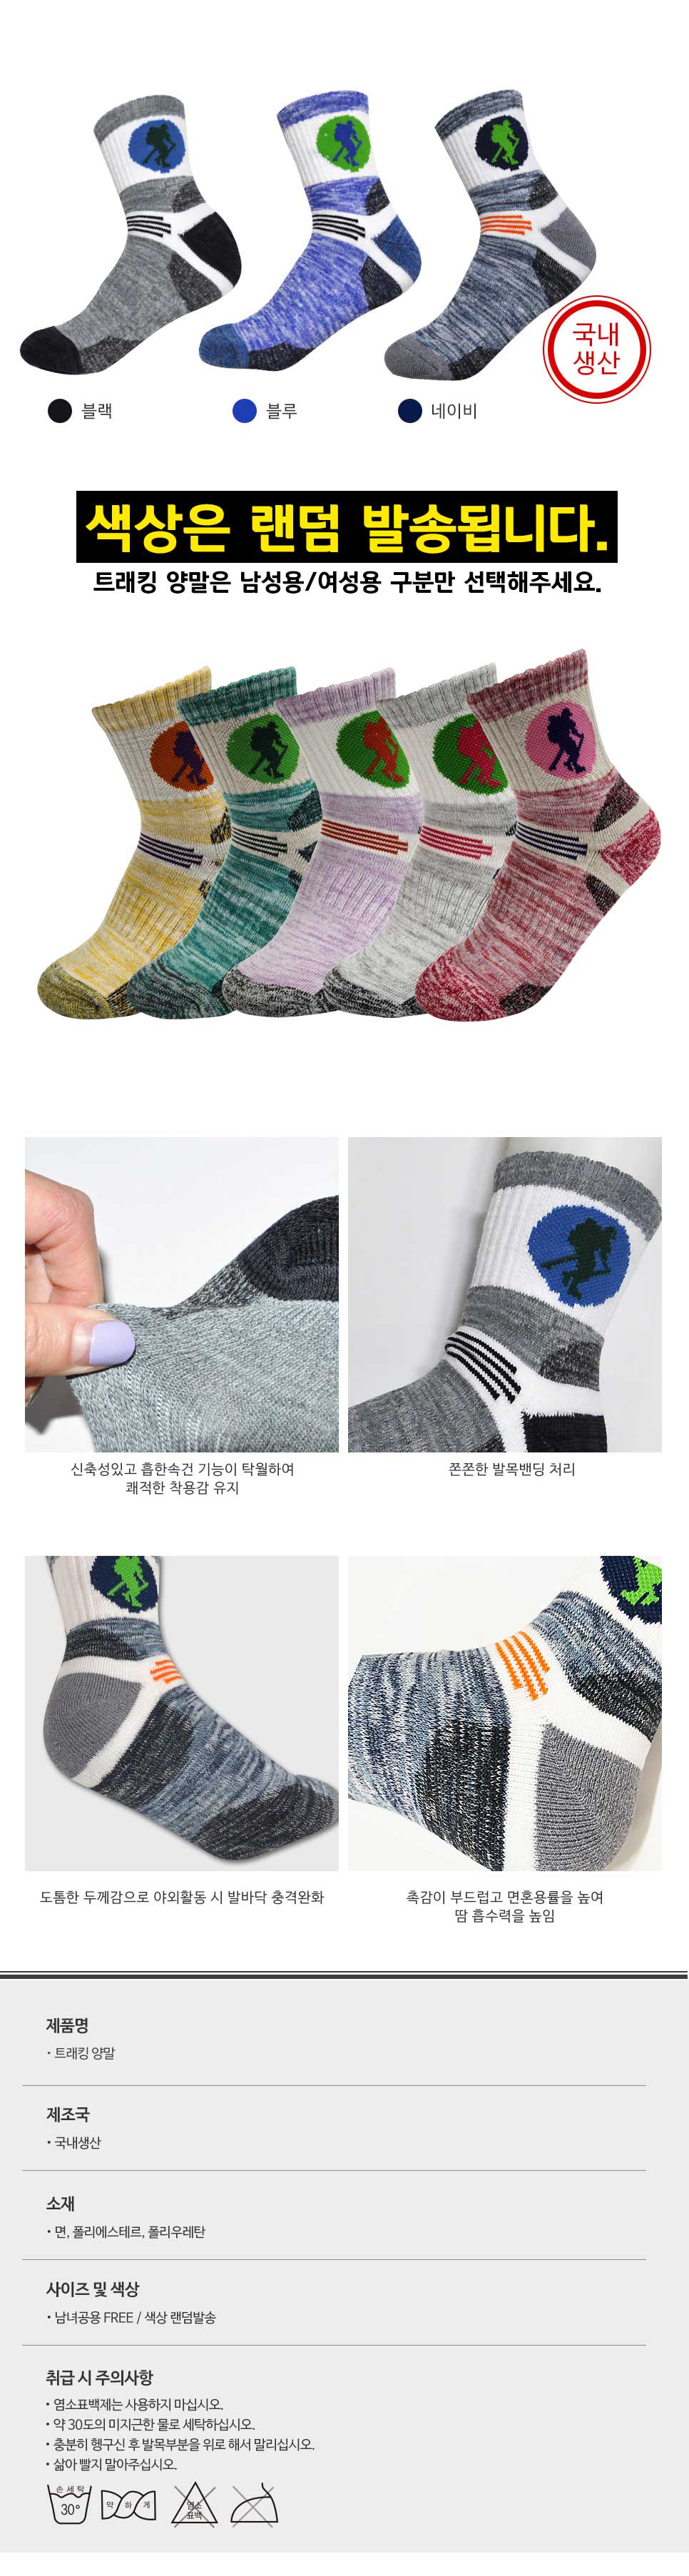 001_tracking_socks.jpg